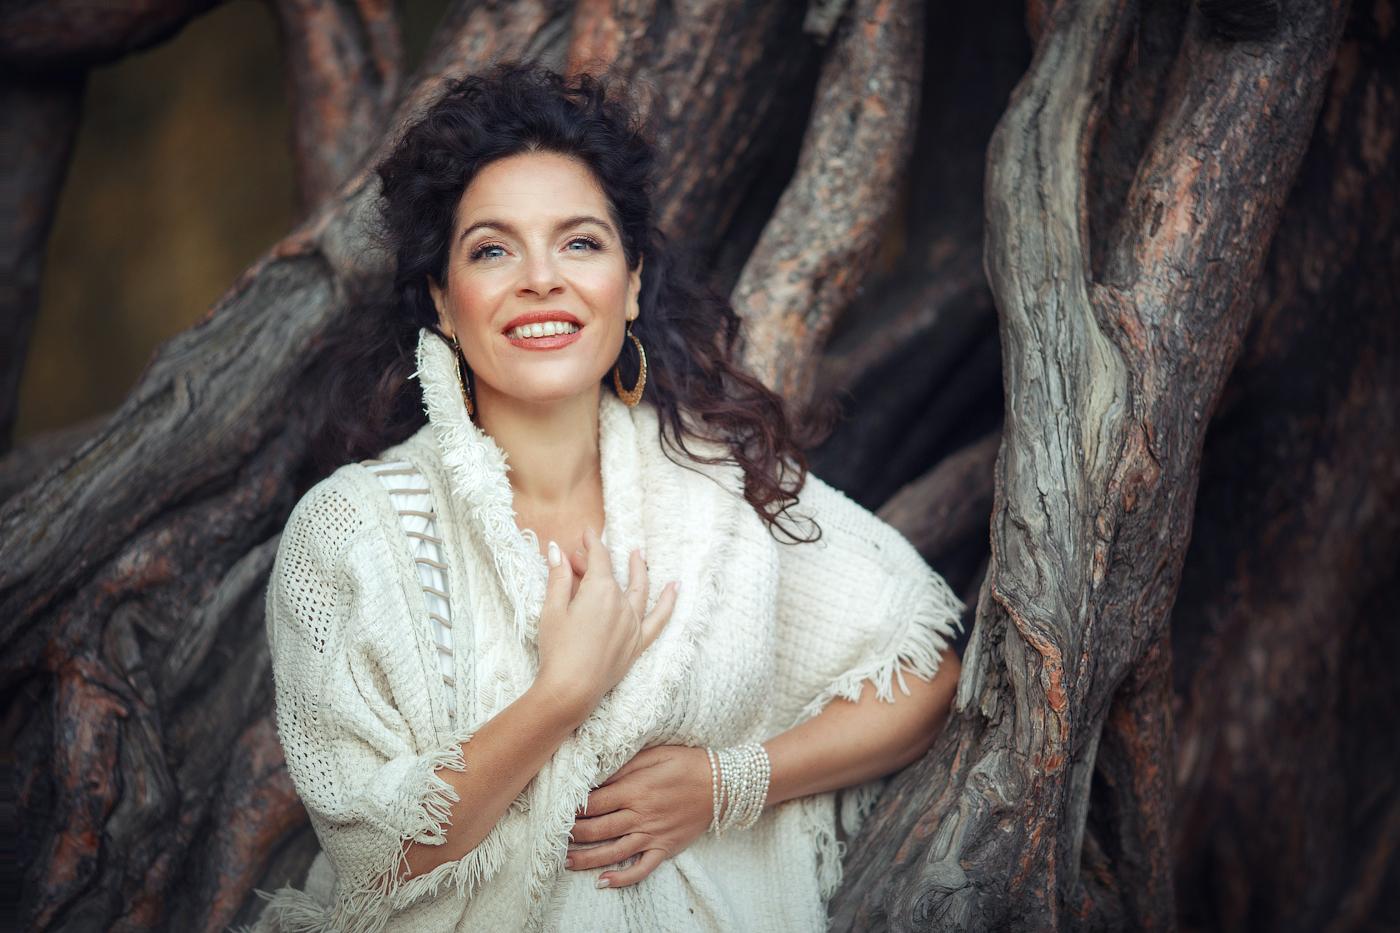 Австралийская певица Перукуа проведет онлайн-семинар и покажет "Силу любви" 